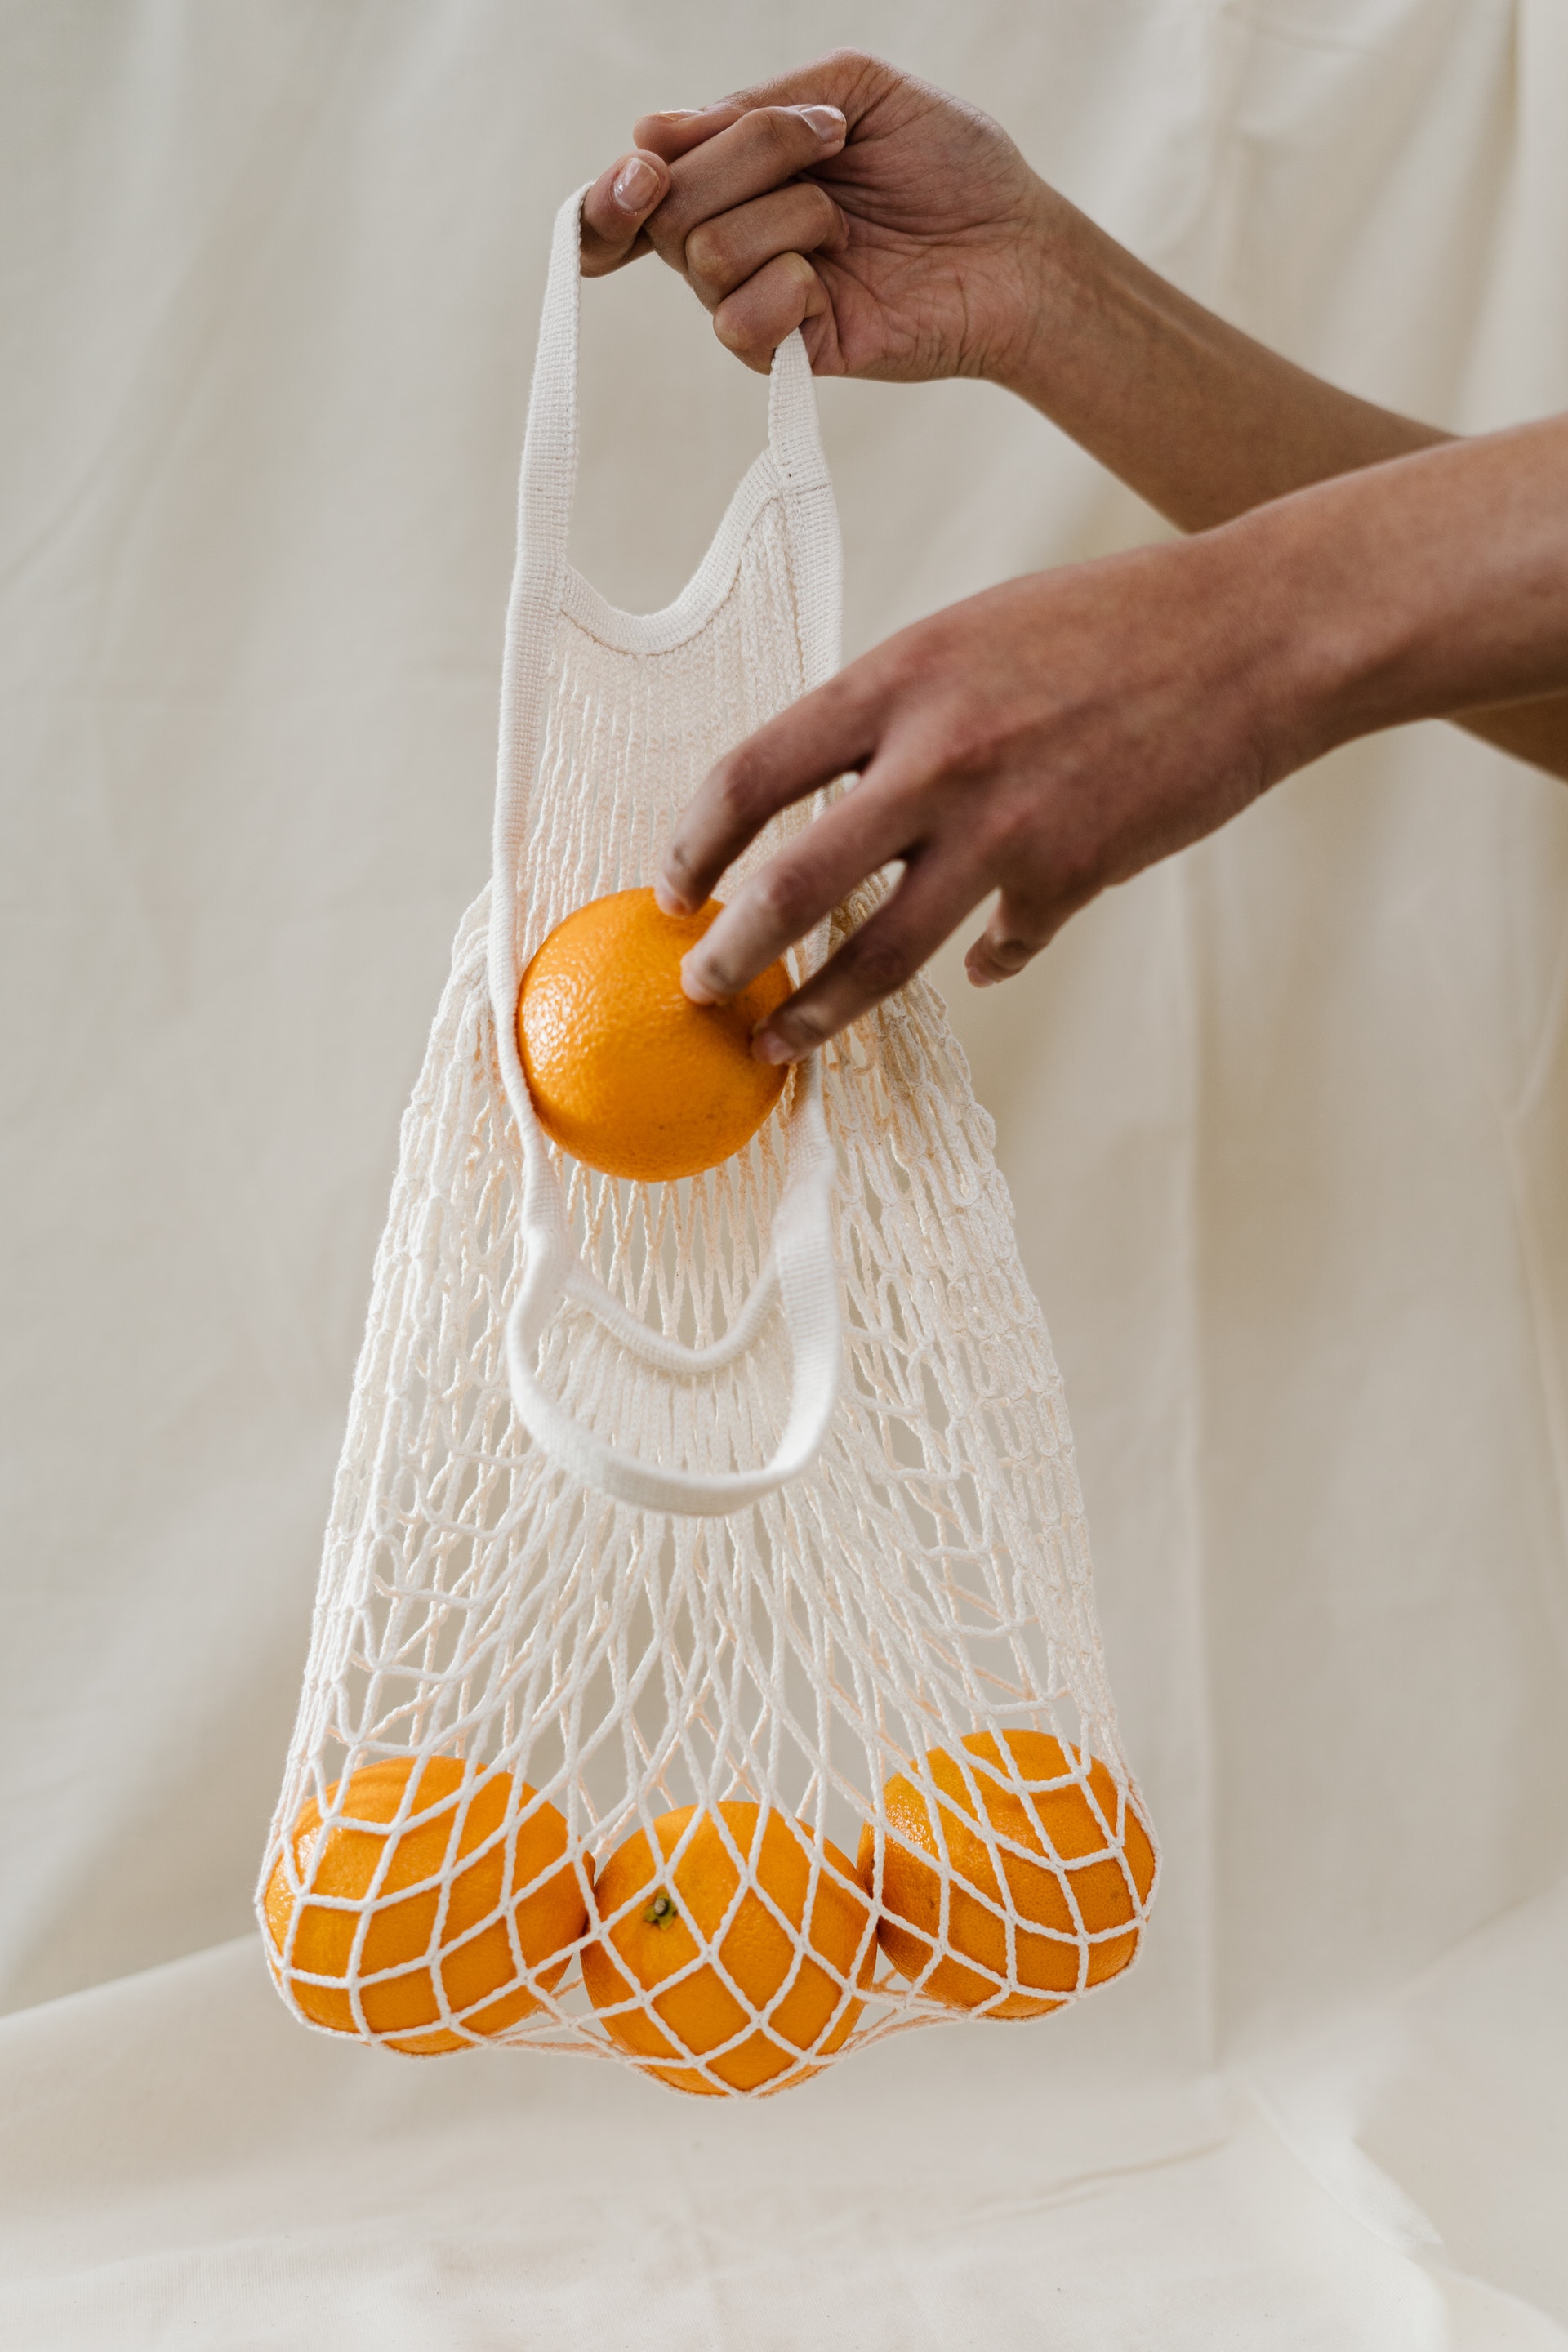 Des oranges dans un sac en tissu